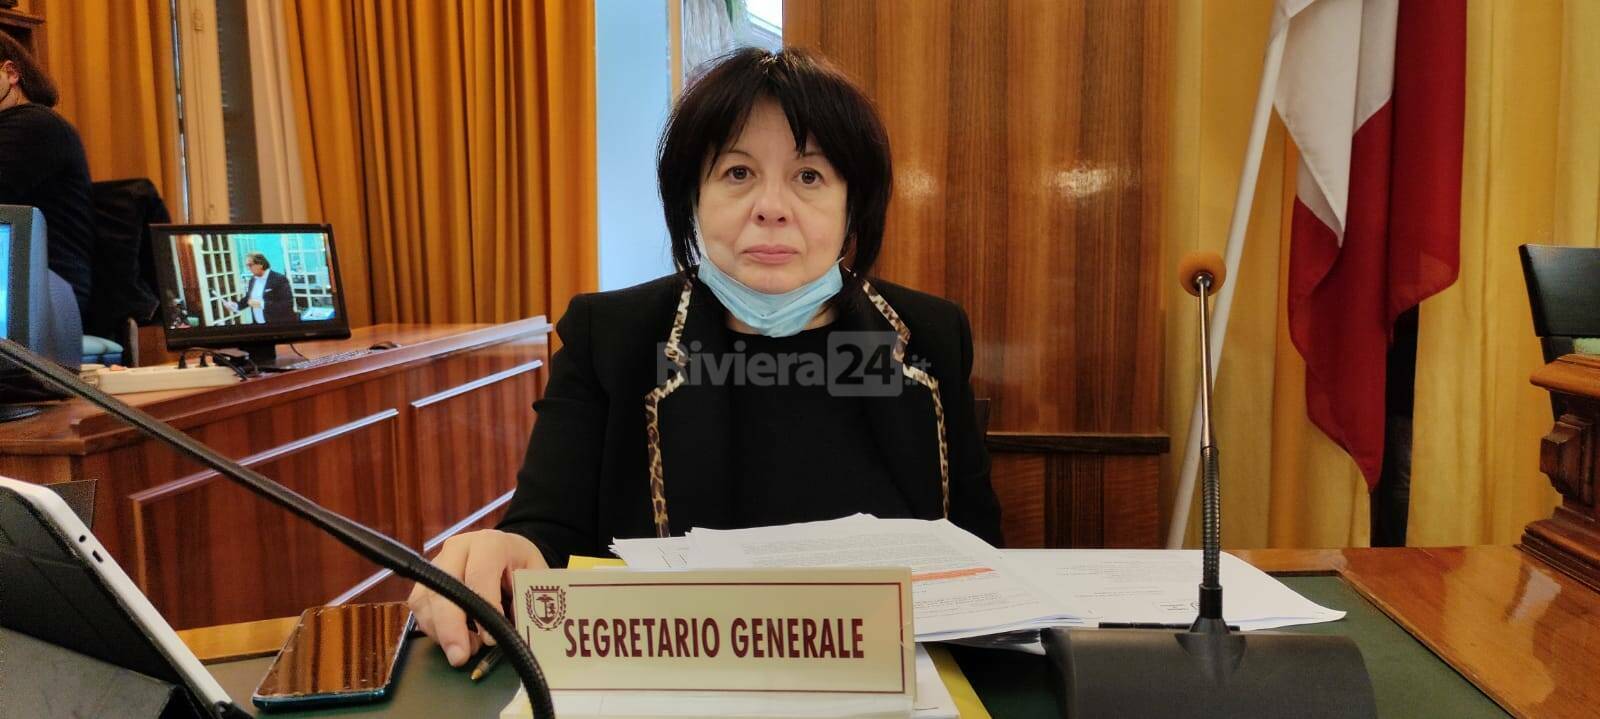 Stefania Caviglia è il nuovo segretario comunale di Mondovì